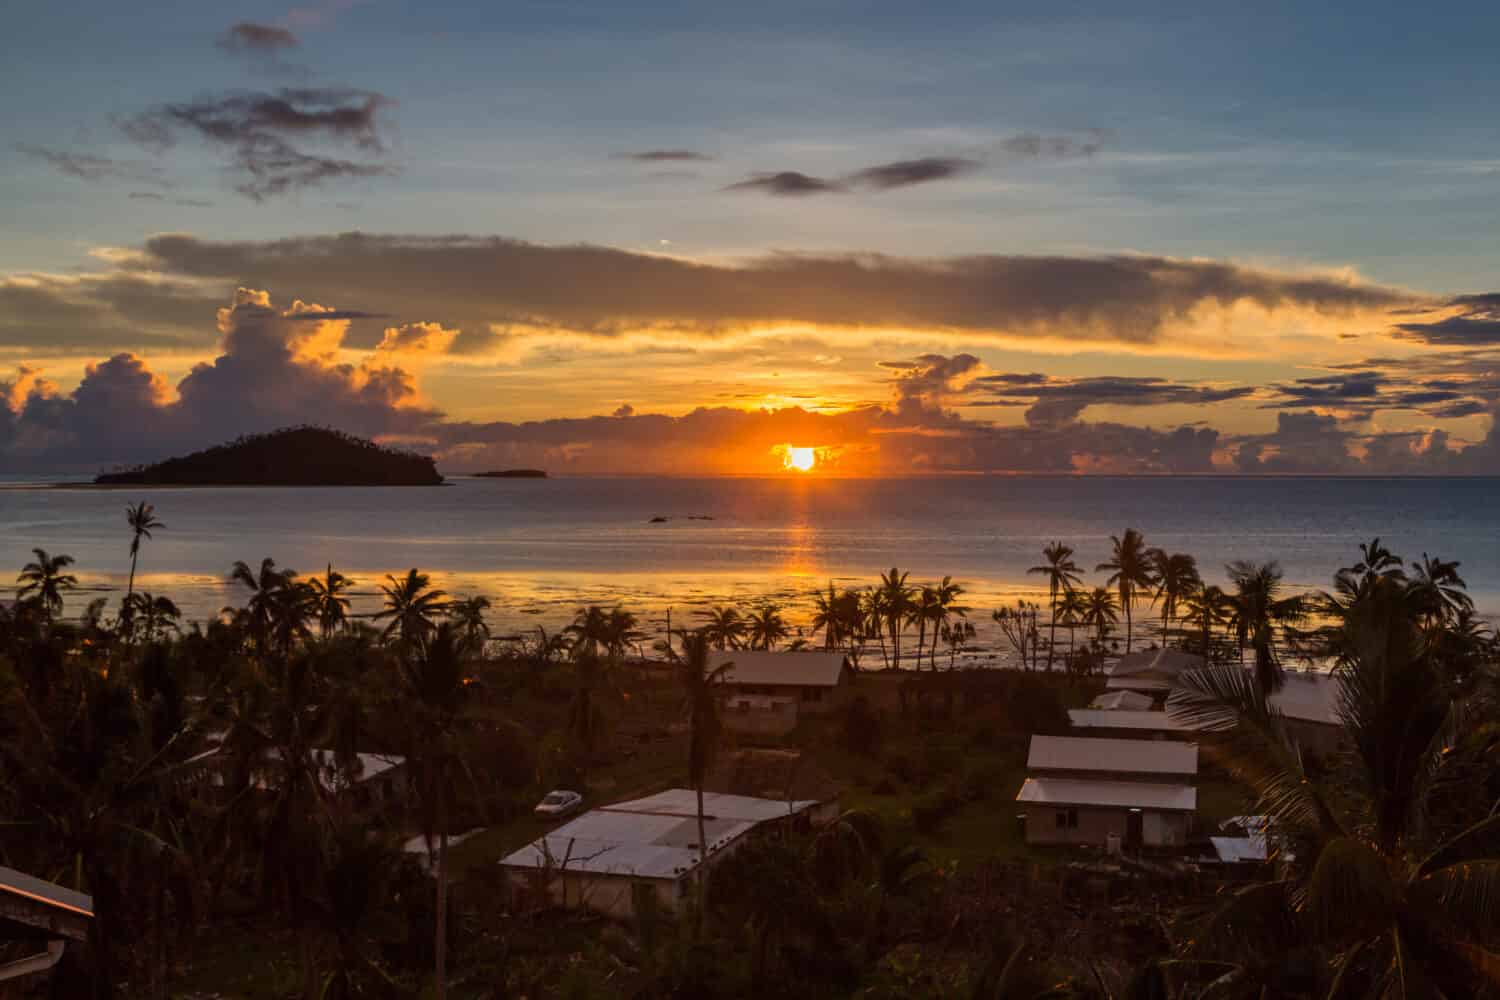 La mattina presto e l'alba sull'Oceano Pacifico nel villaggio di Mata-Utu, la capitale del territorio di Wallis e Futuna (Wallis et Futuna), collettività di isole francesi d'oltremare.  Il centro è ricoperto di palme.